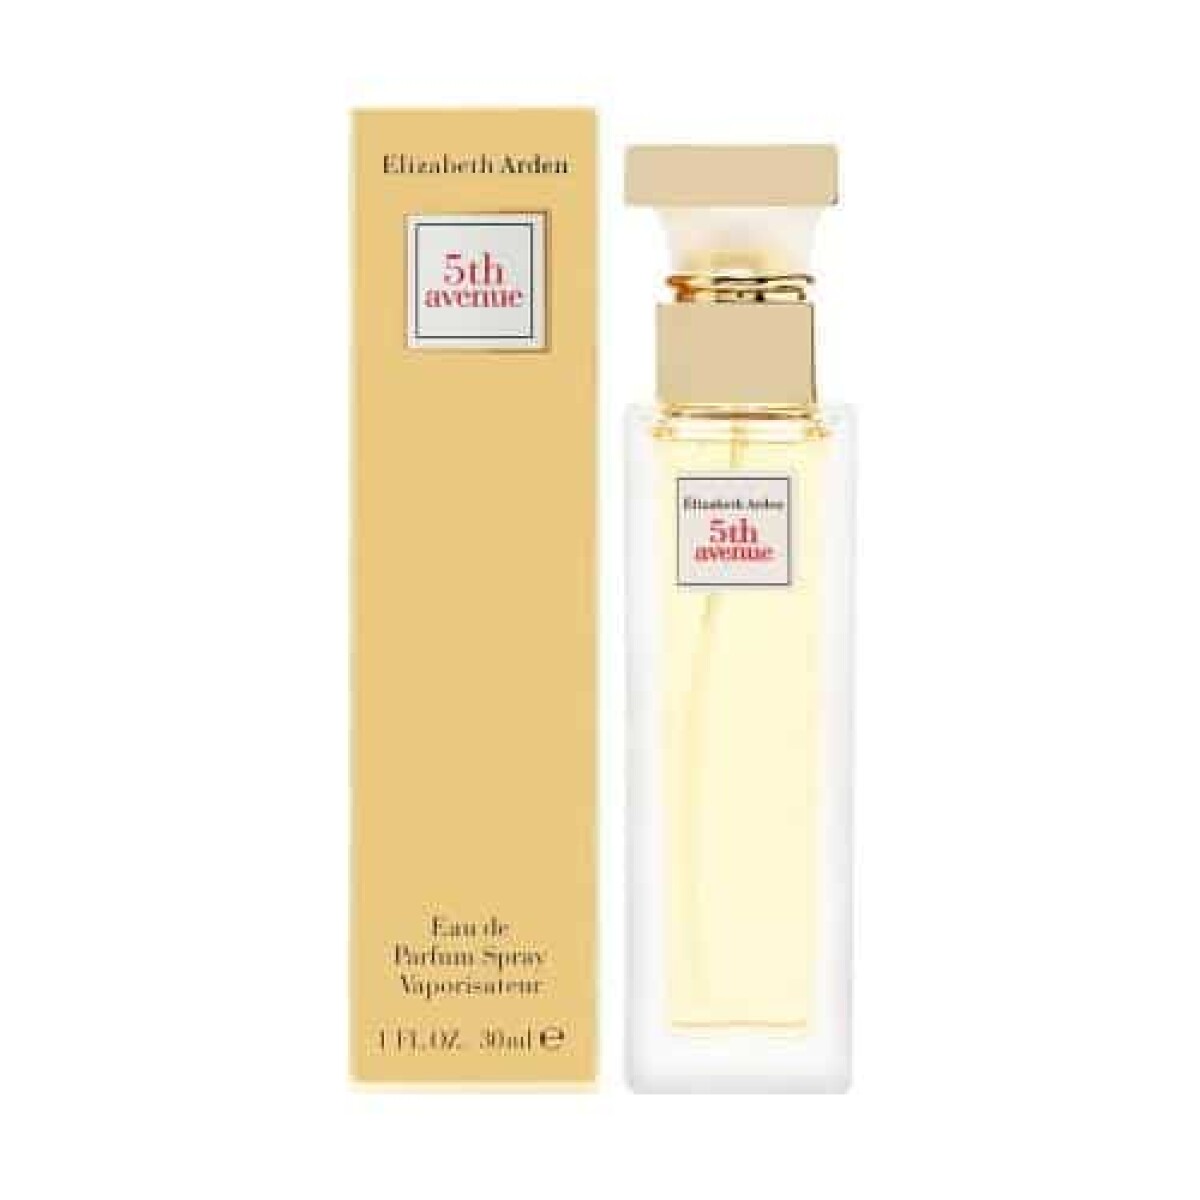 Perfume Elizabeth Arden 5Th Avenue Edp 30 ml 